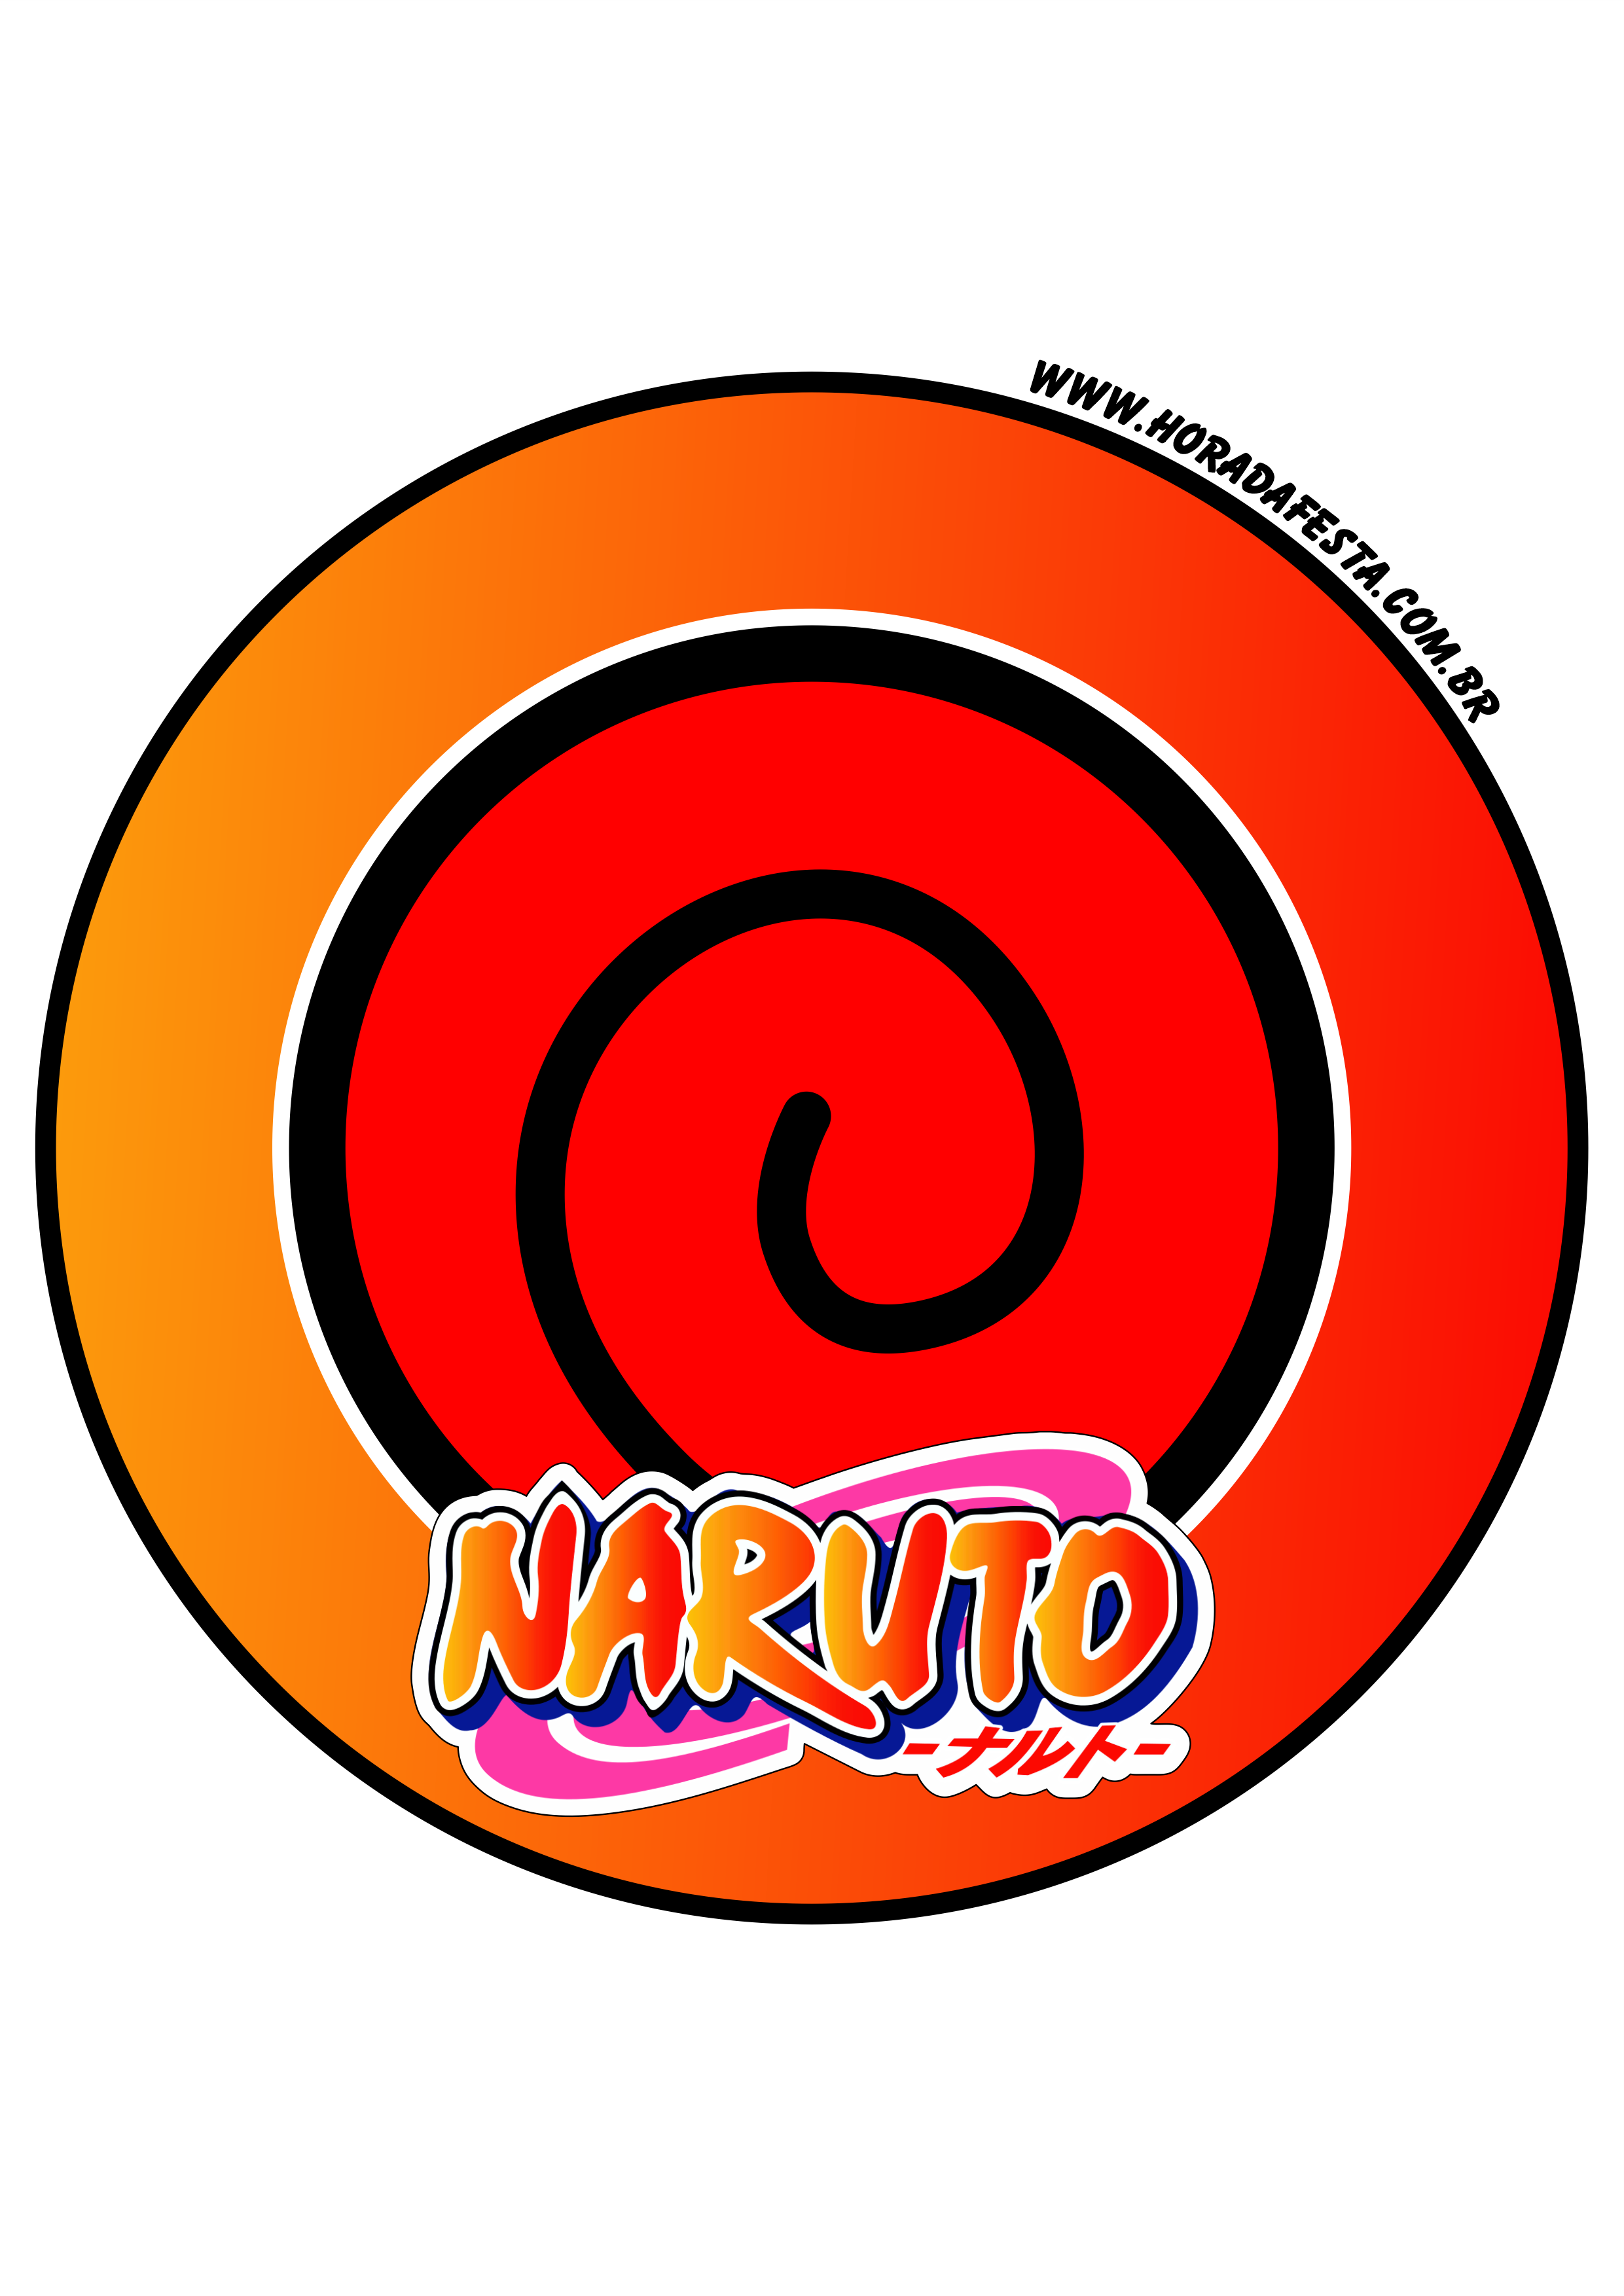 Naruto shippuden desenho cute anime artes gráficas imagem sem fundo png